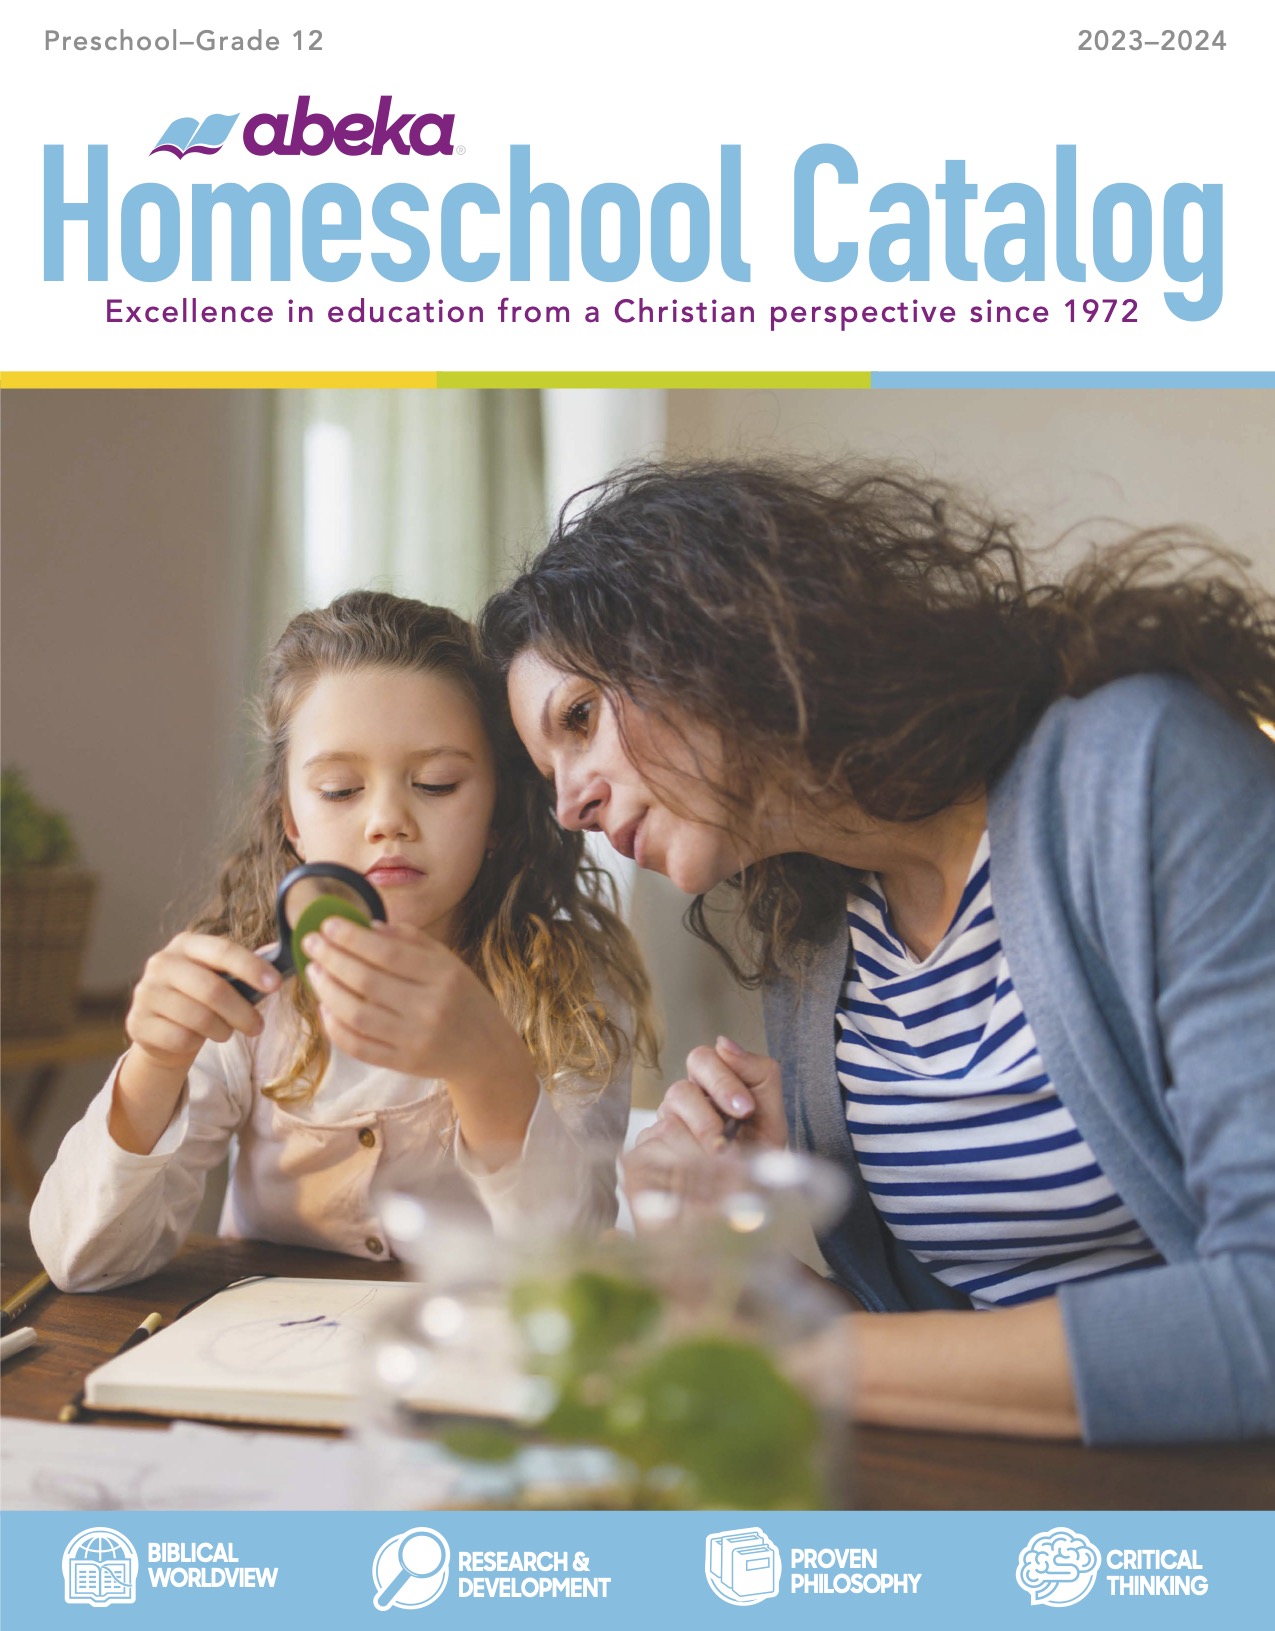 Abeka Homeschool Catalog Cover 2022